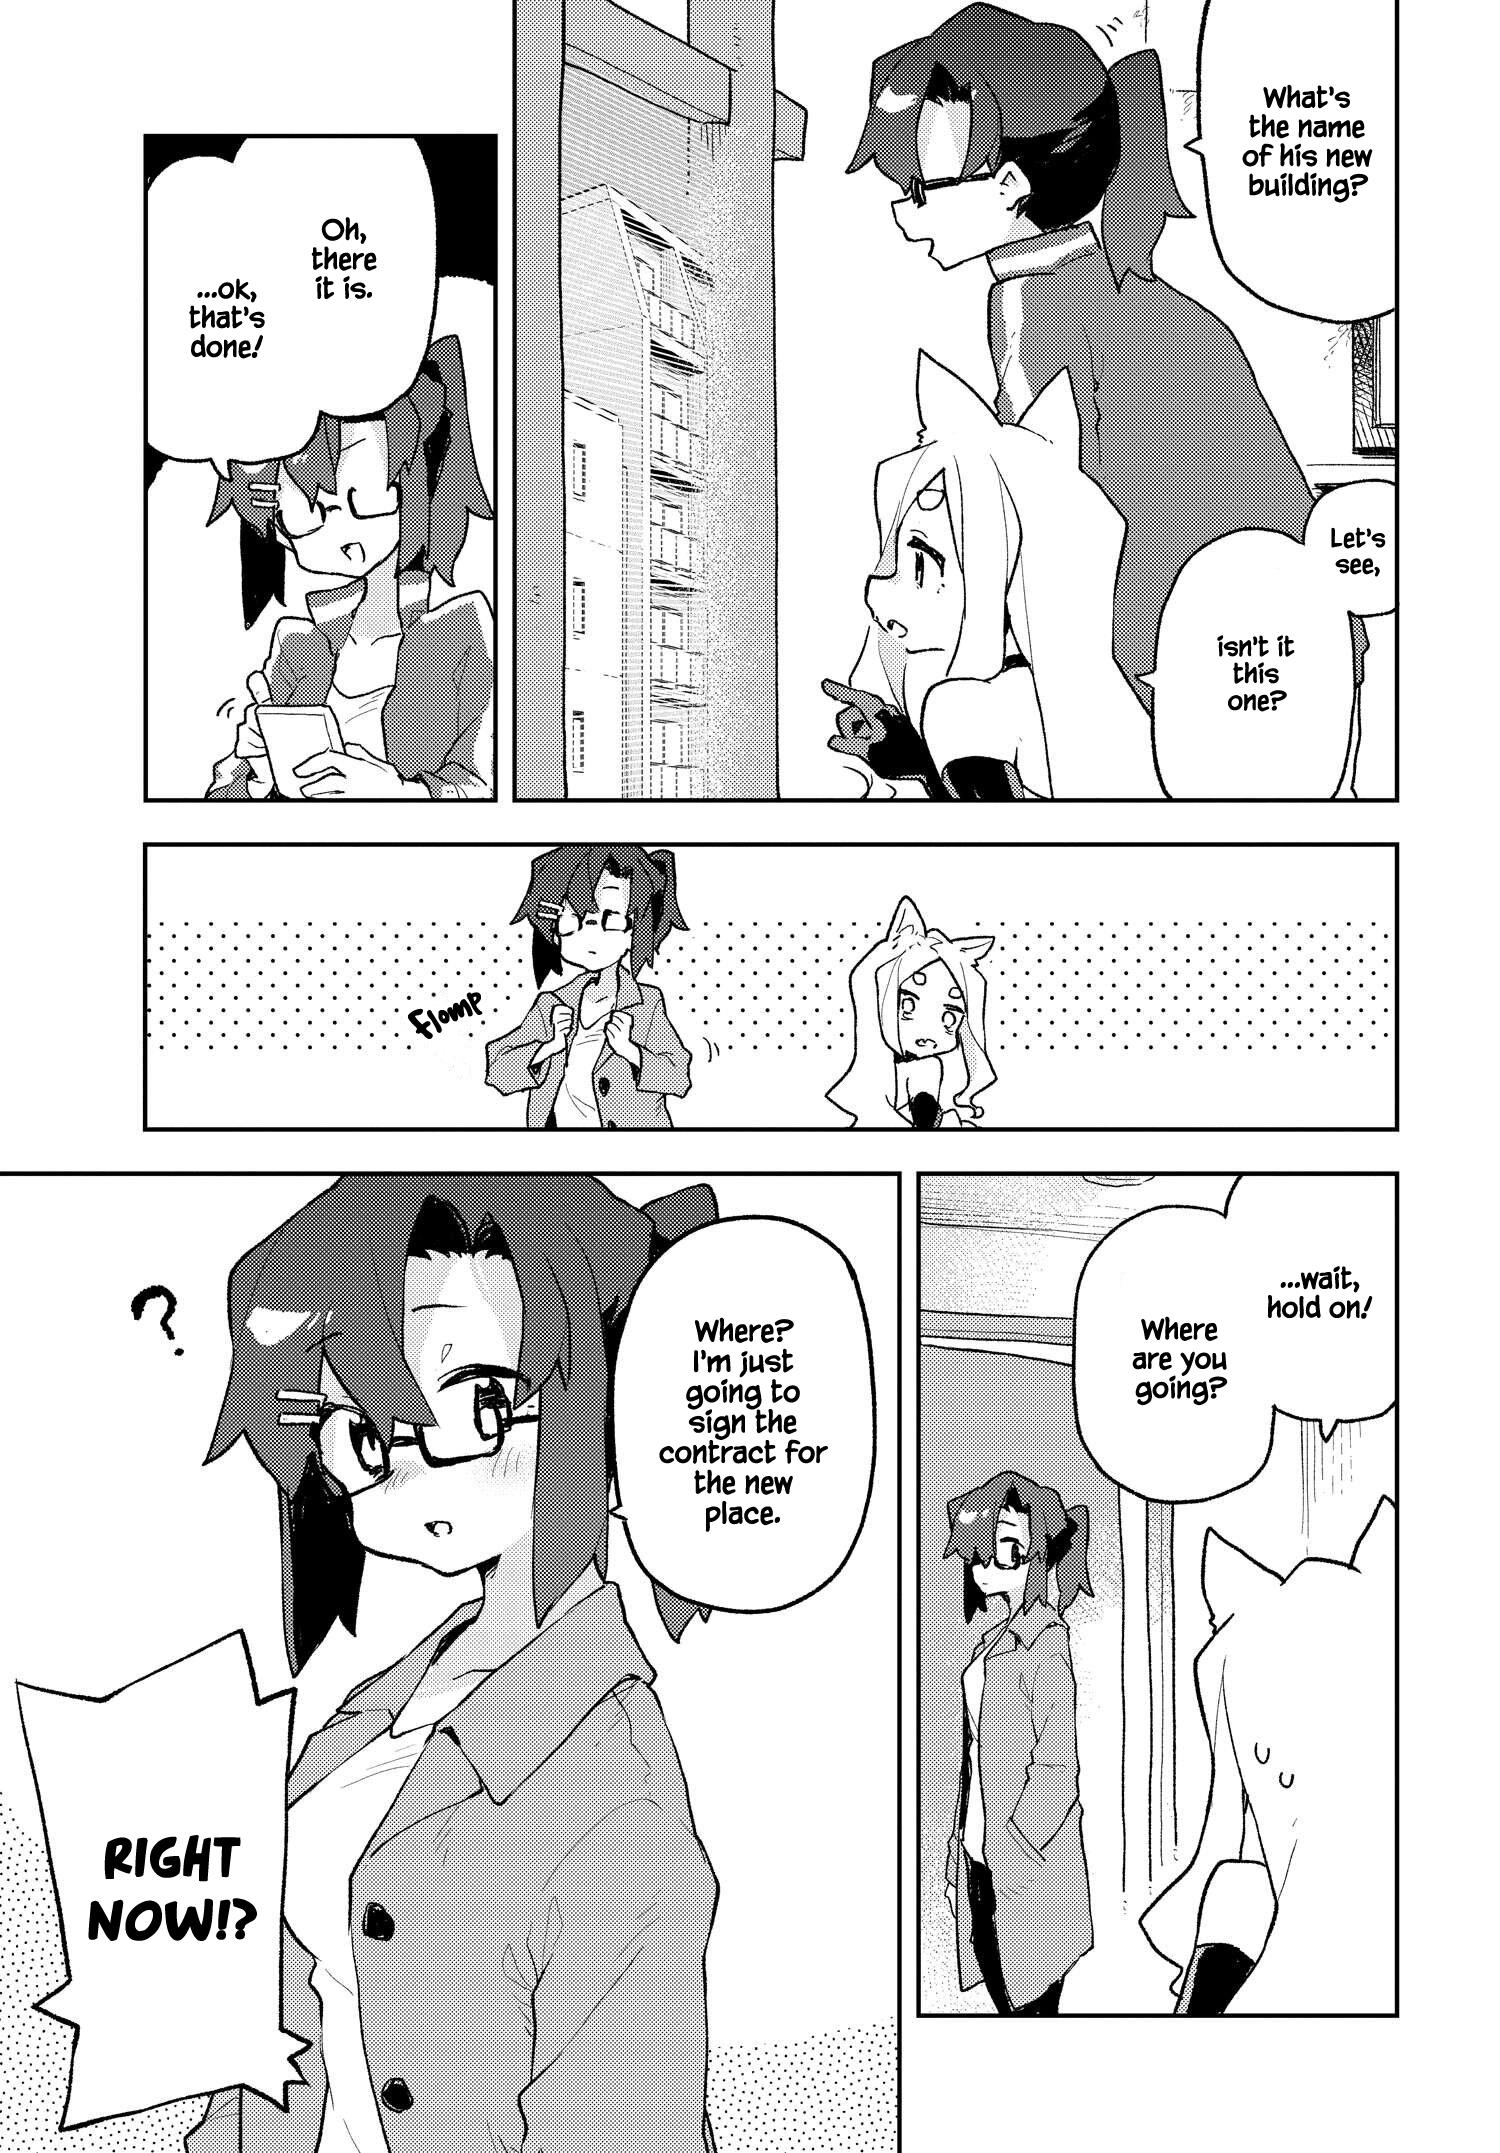 Sewayaki Kitsune No Senko-San Vol.9 Chapter 66.5: Another Tail 6 page 5 - Mangakakalot